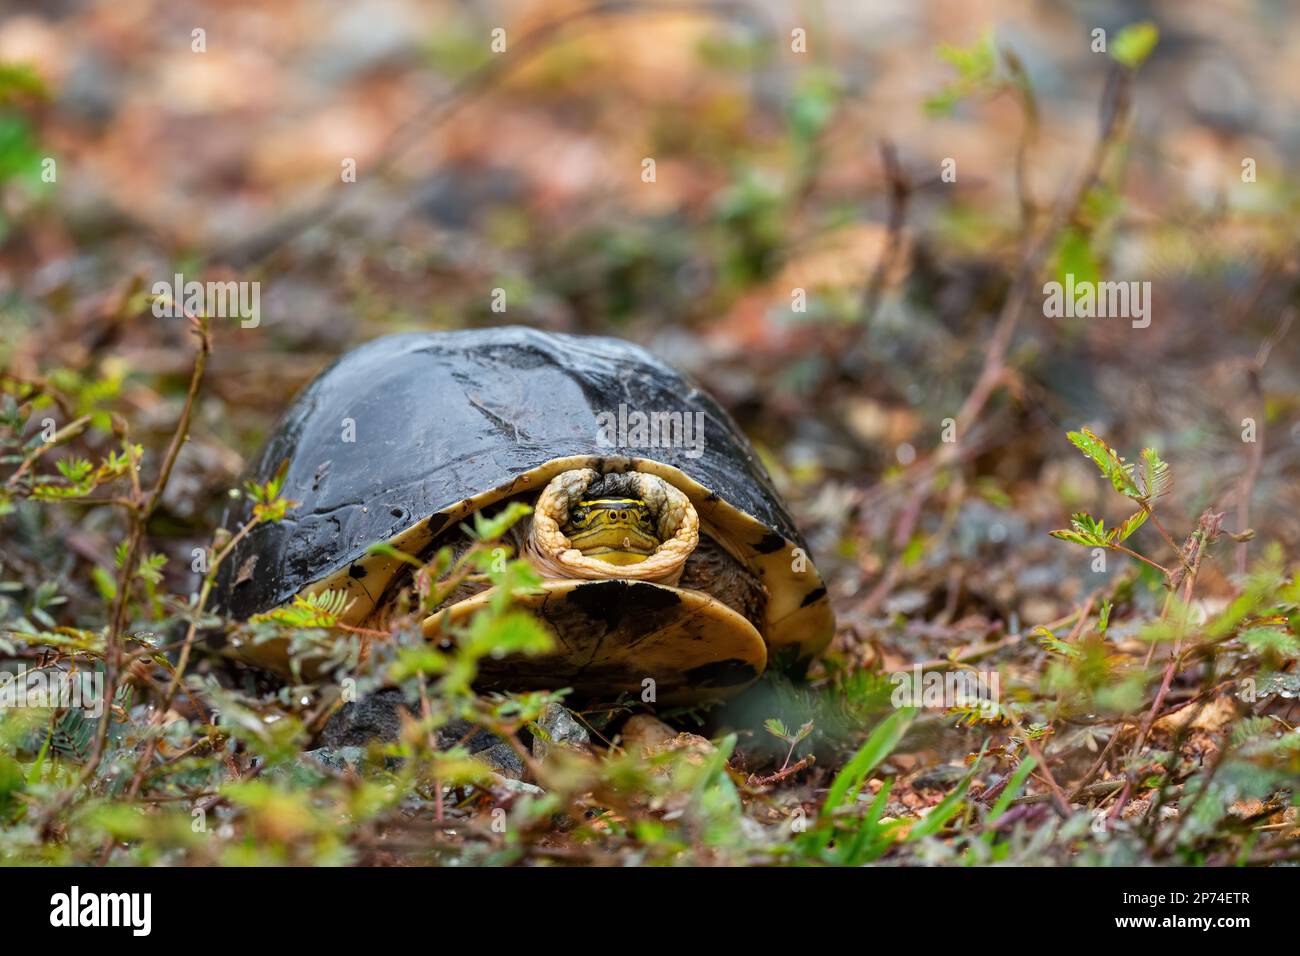 Amboina scatola tartaruga - Cuora amboinensis, bella grande tartaruga dalle foreste e dai boschi del sud-est asiatico, Malesia. Foto Stock